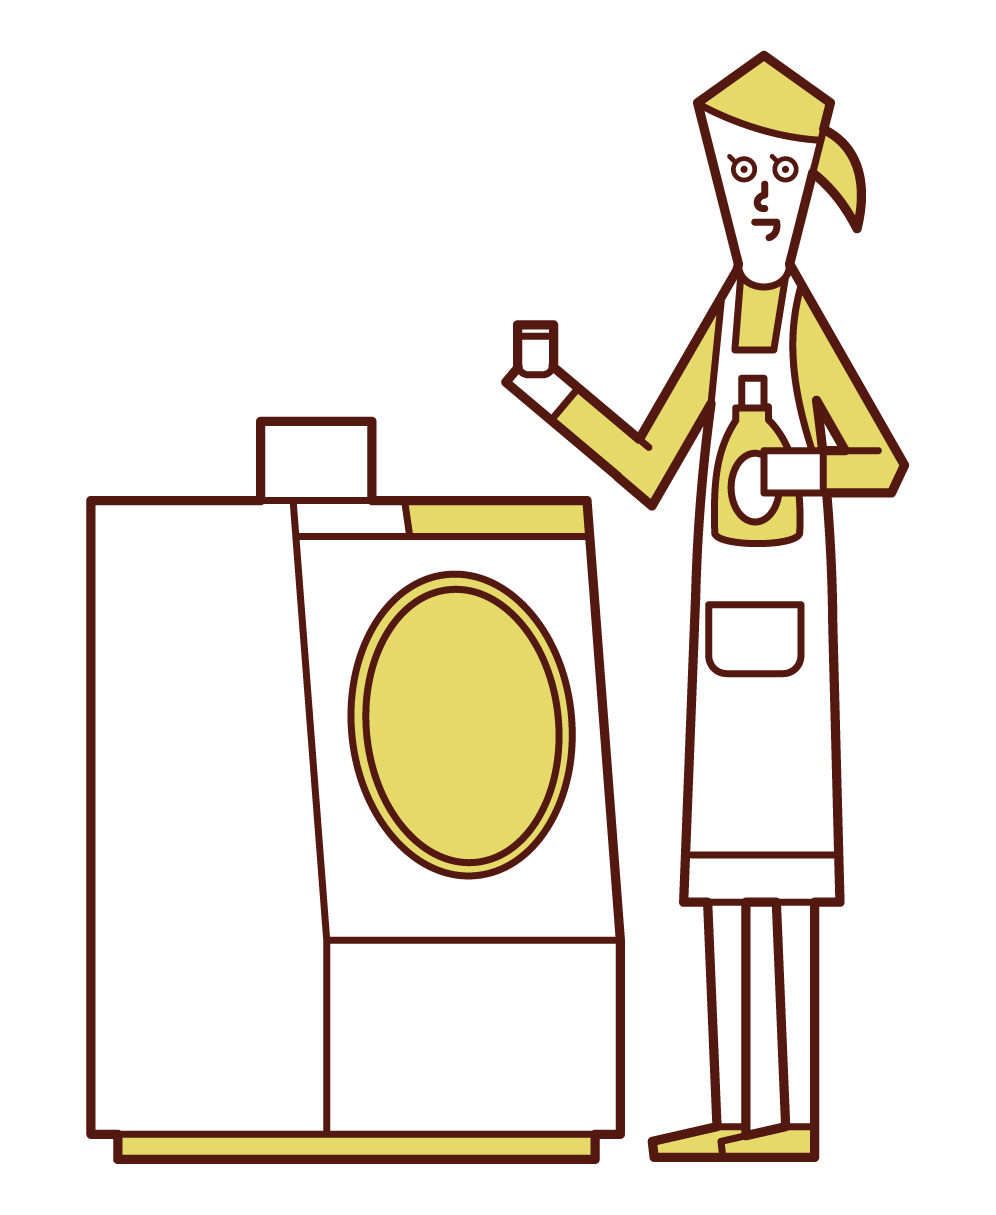 在洗衣機中加入洗滌劑和柔軟劑的人（女性）的插圖